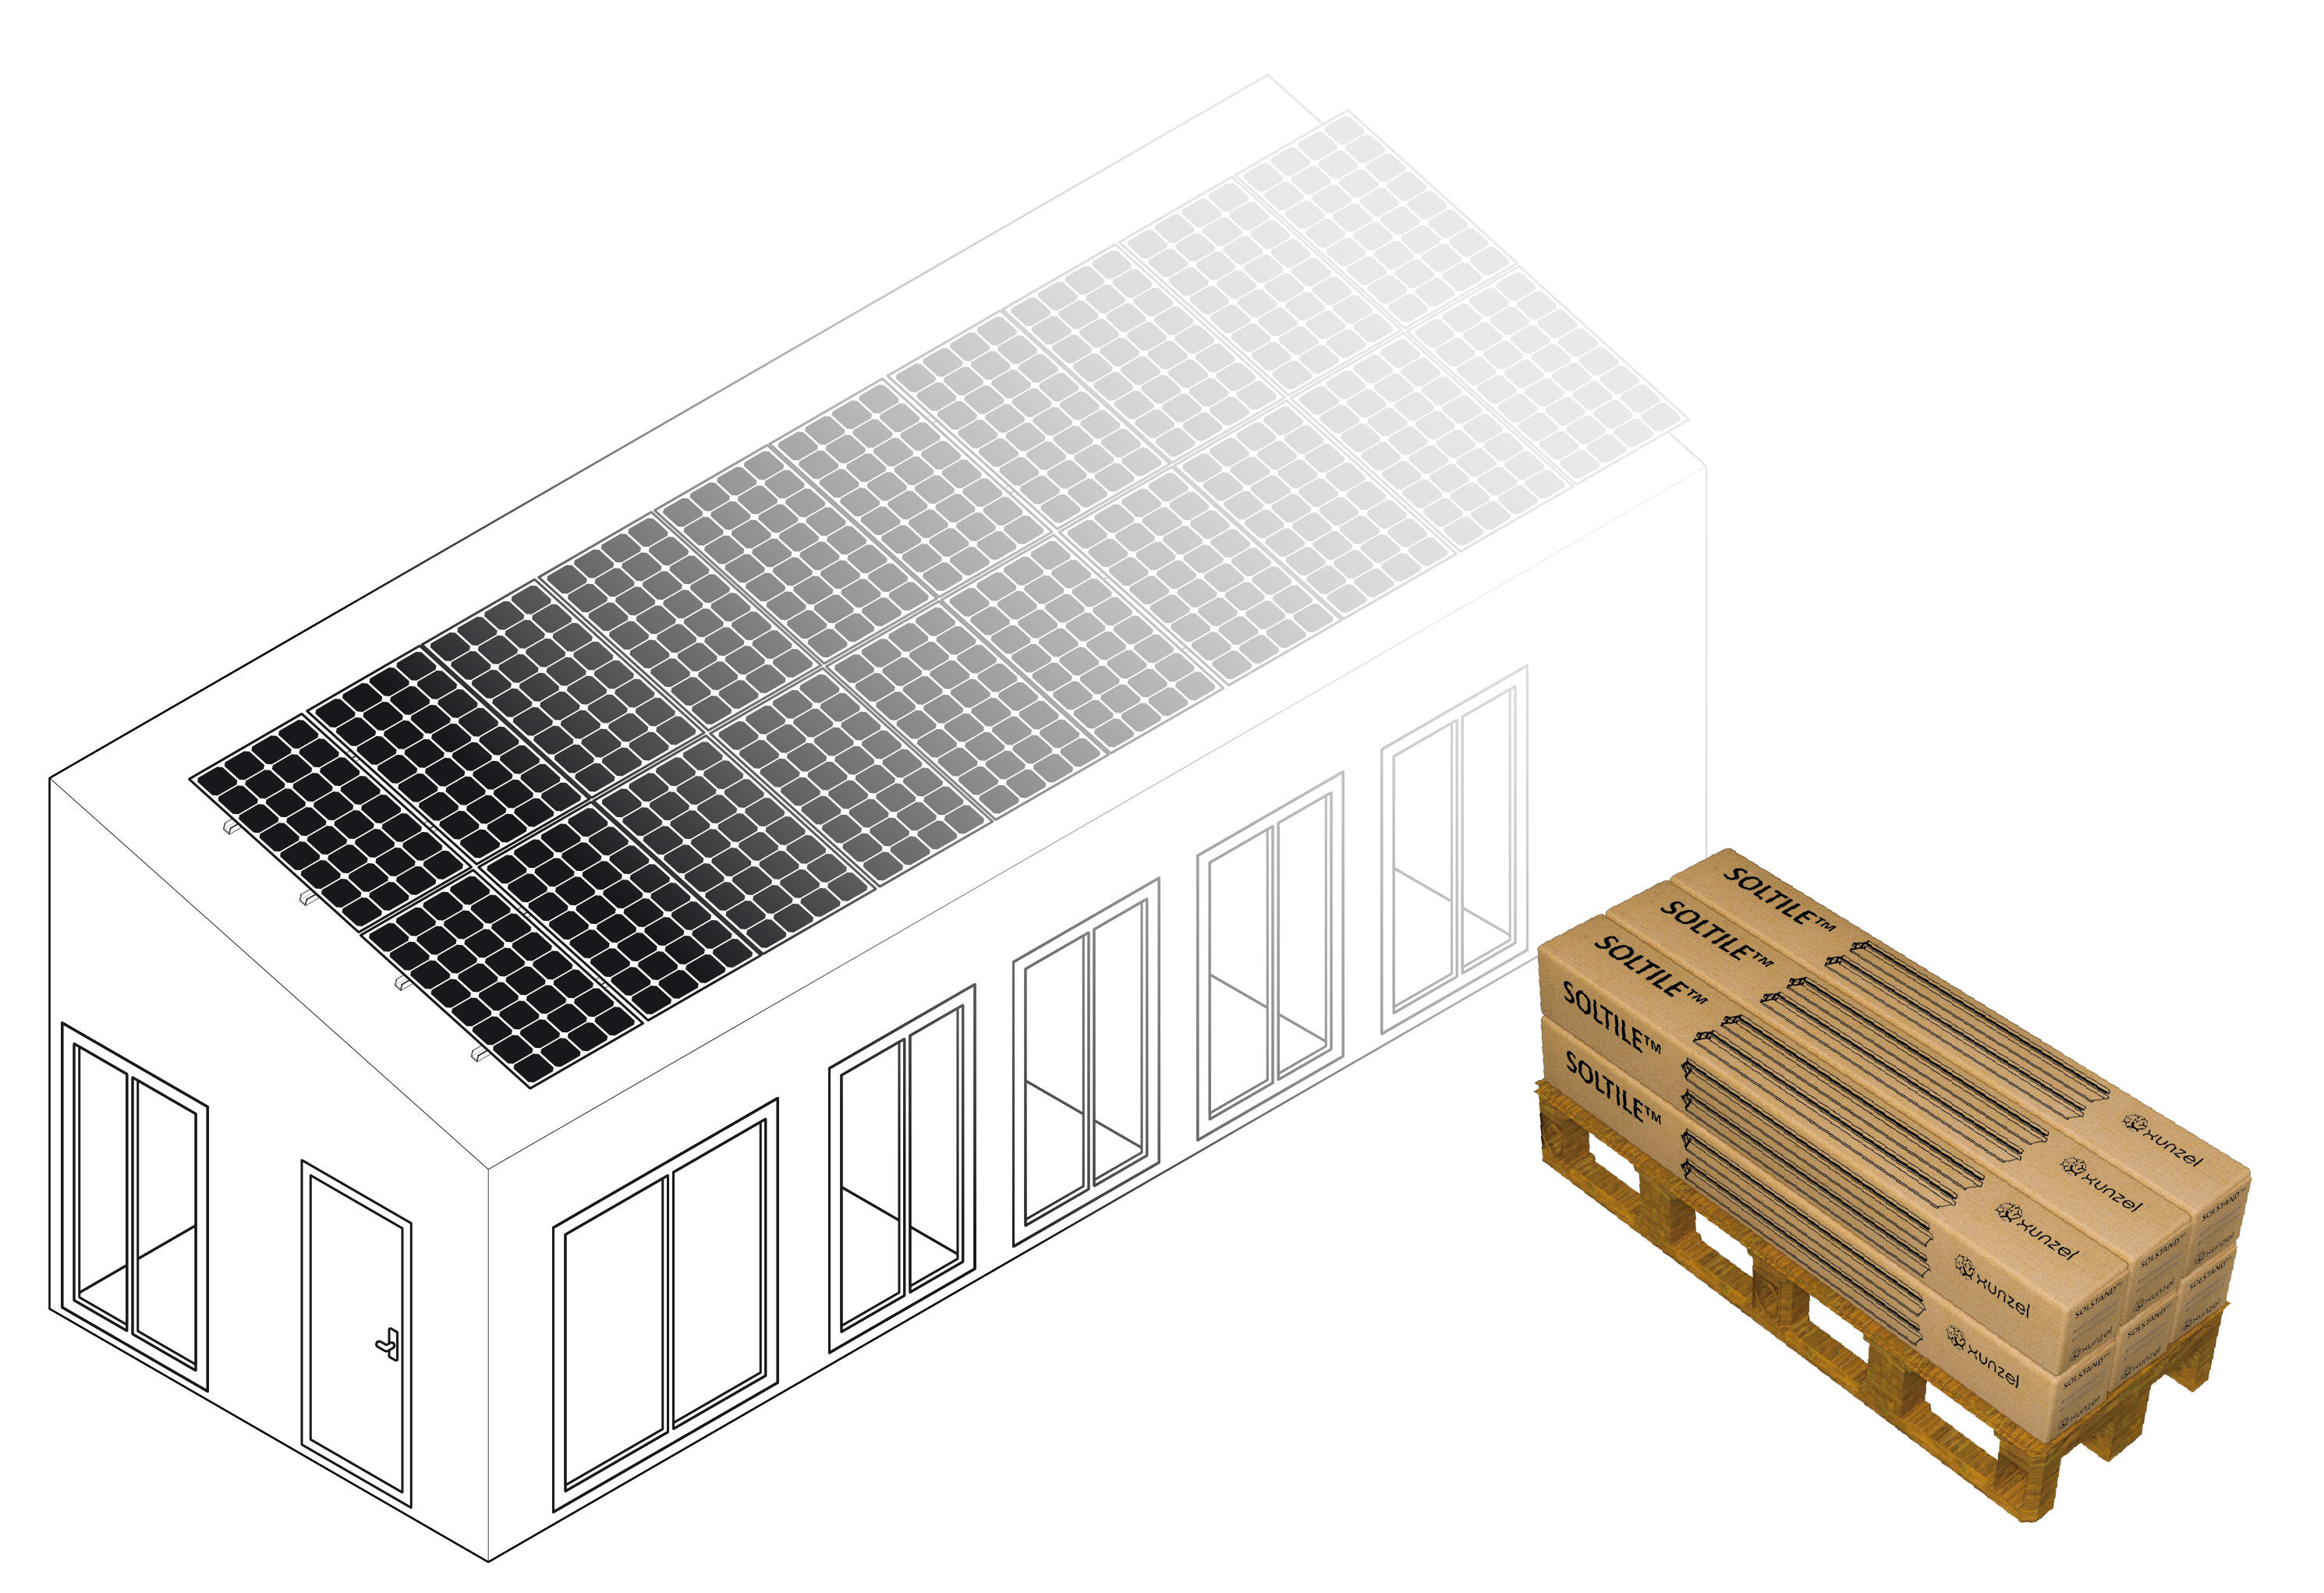 Soporte para tejado soltile-20xl para 20 paneles solarpower-425w